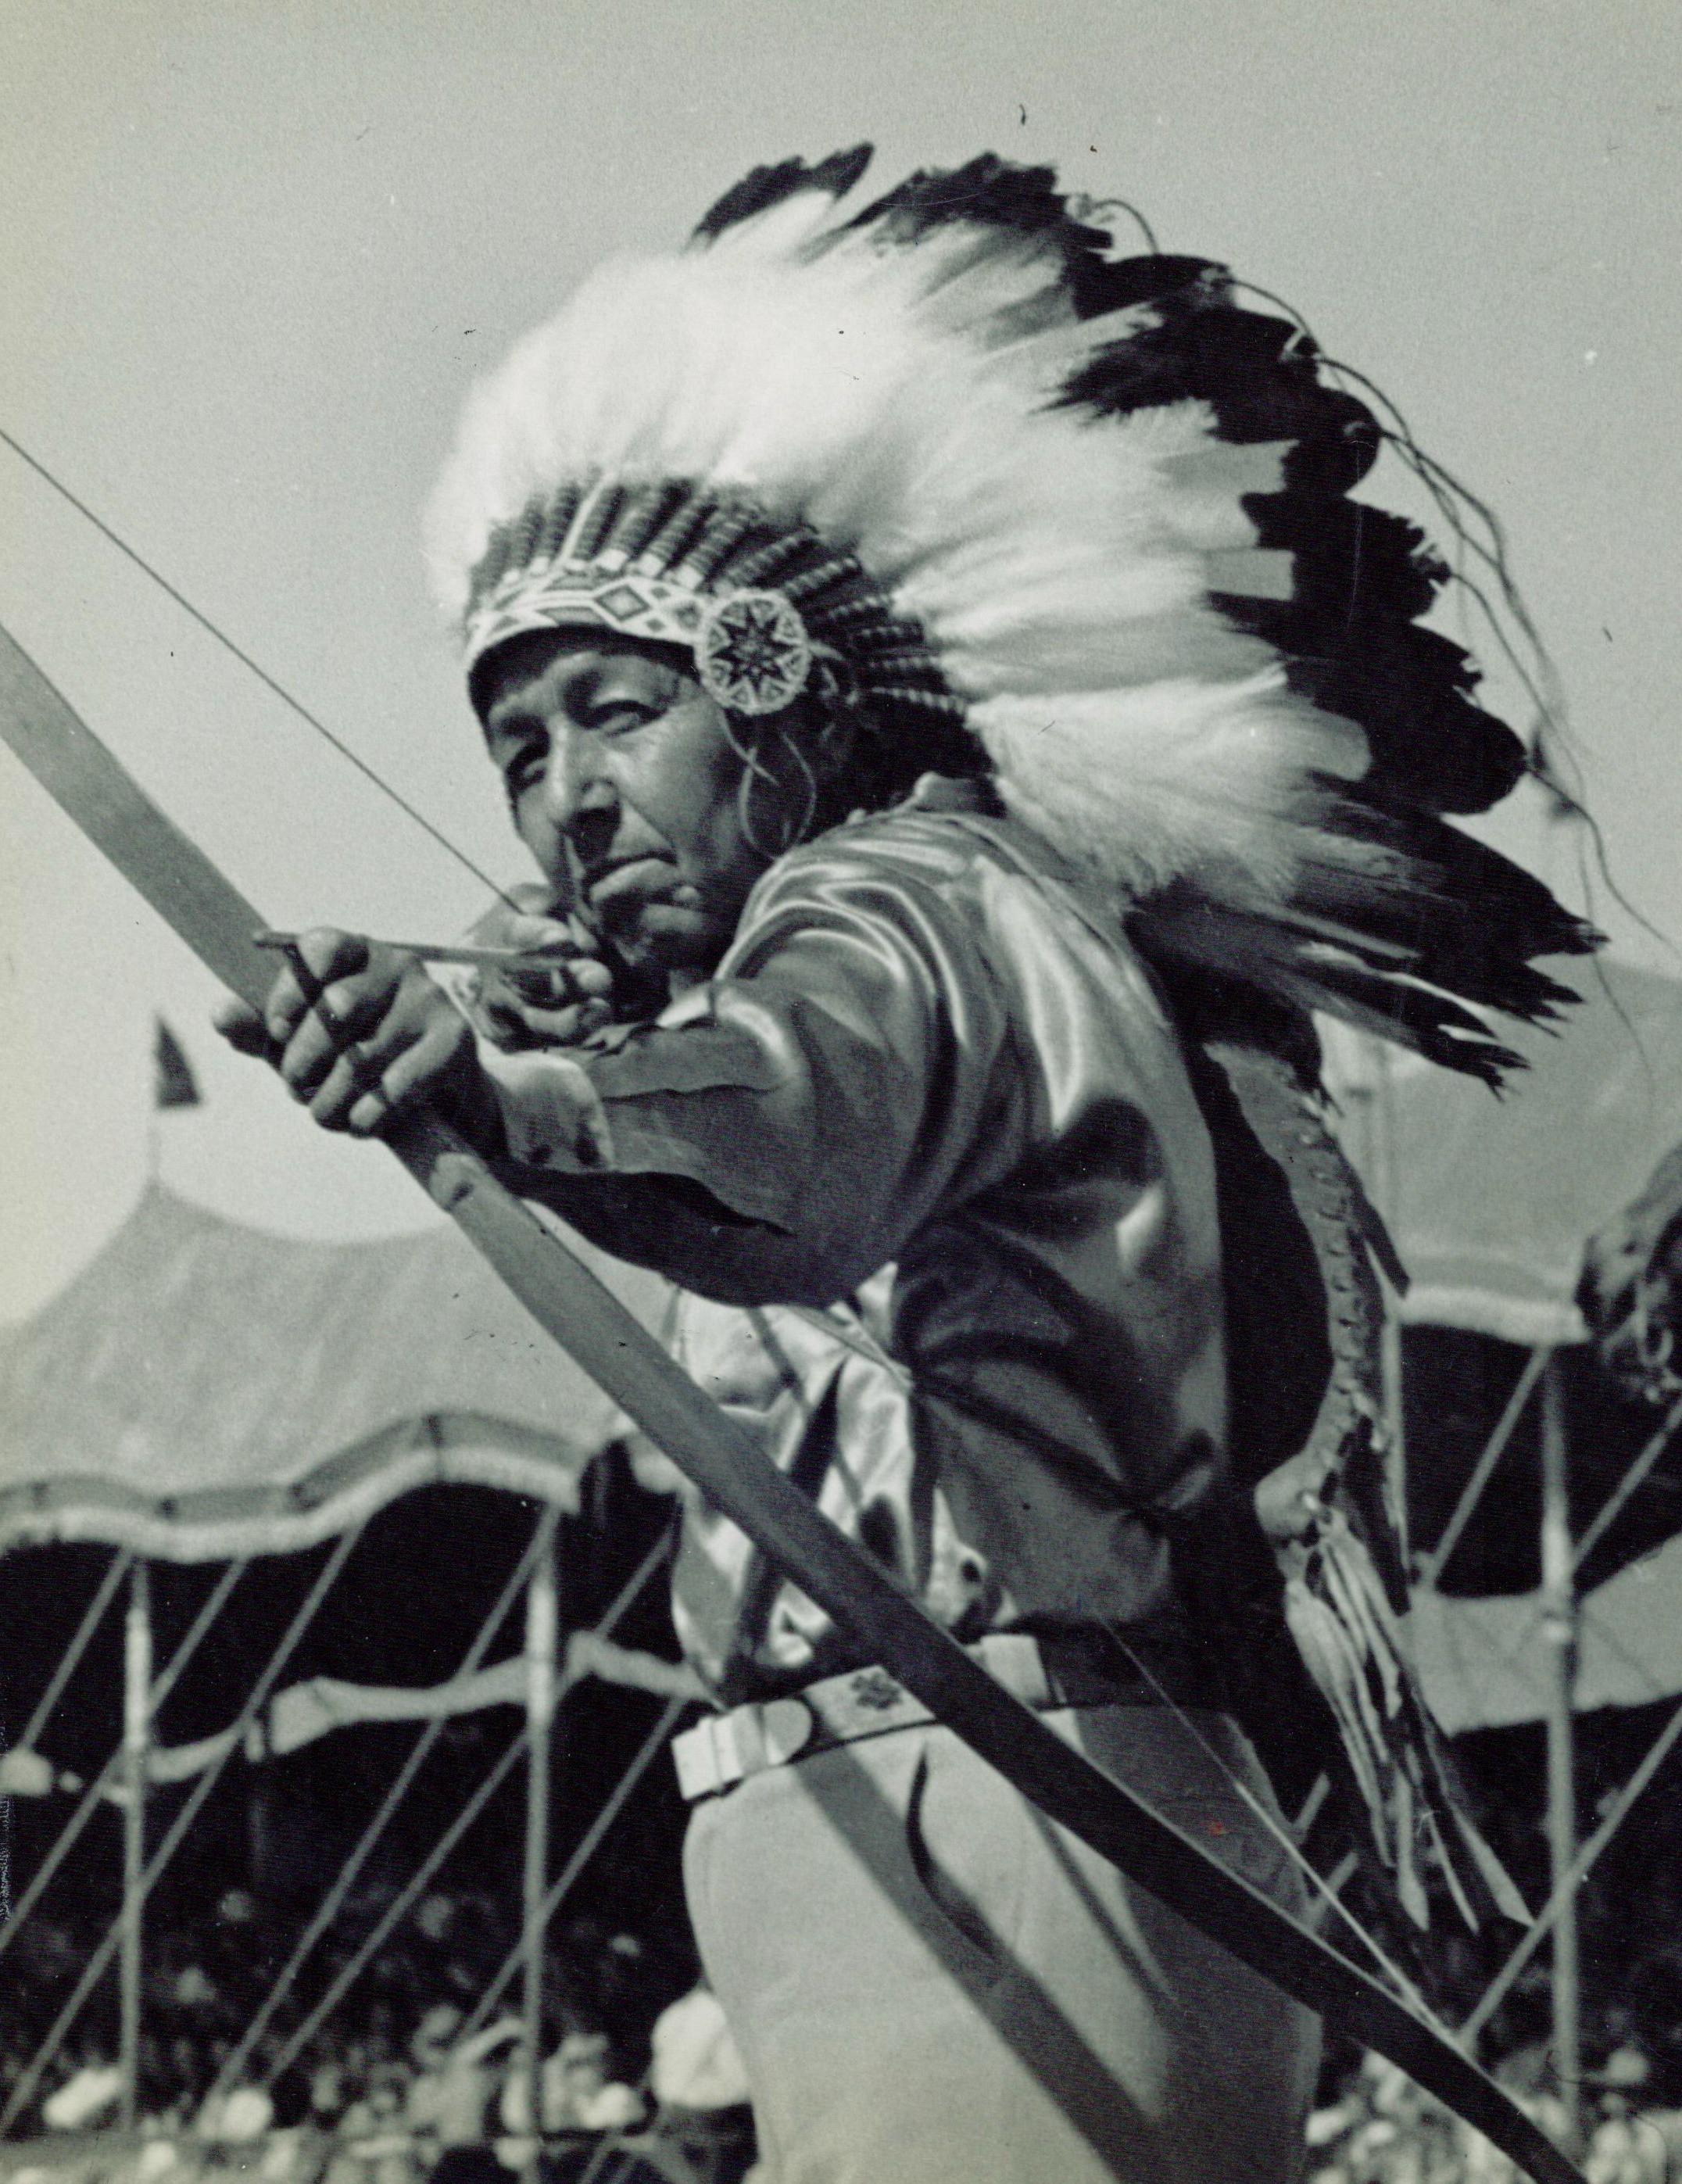 Североамериканские индейцы 6. Апачи индейцы. Команчи индейцы. Стрелы индейцев Северной Америки. Индейцы Северной Америки лучник.